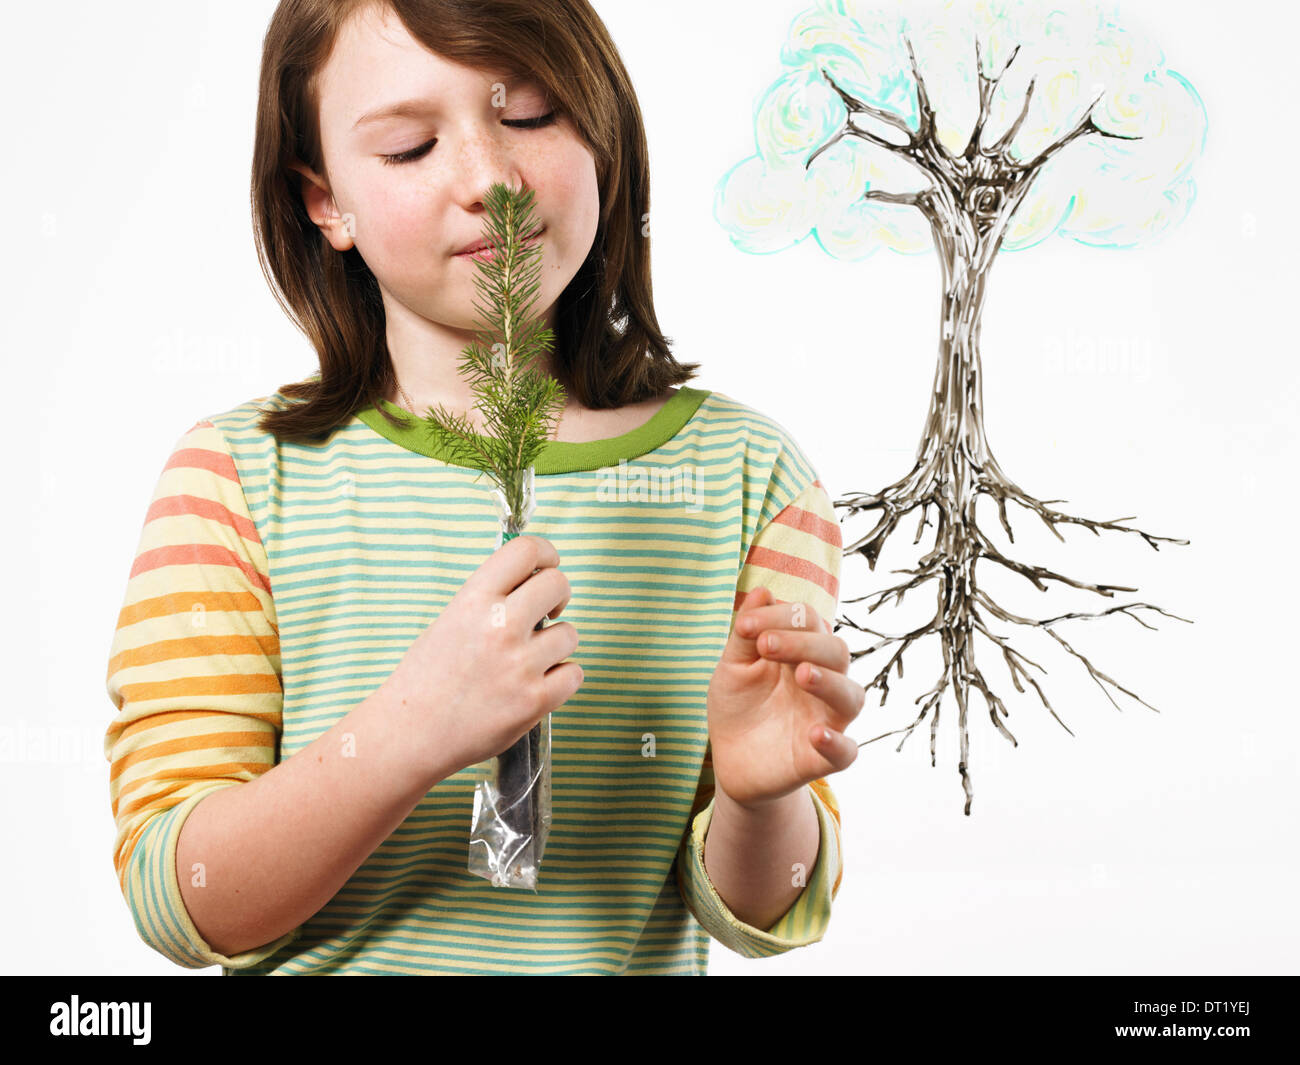 Ein junges Mädchen hält einen kleinen immergrünen Sämling auf ihre Nase und riechen Pflanze mit Wurzeln auf einer klar durchsichtigen Oberfläche Stockfoto